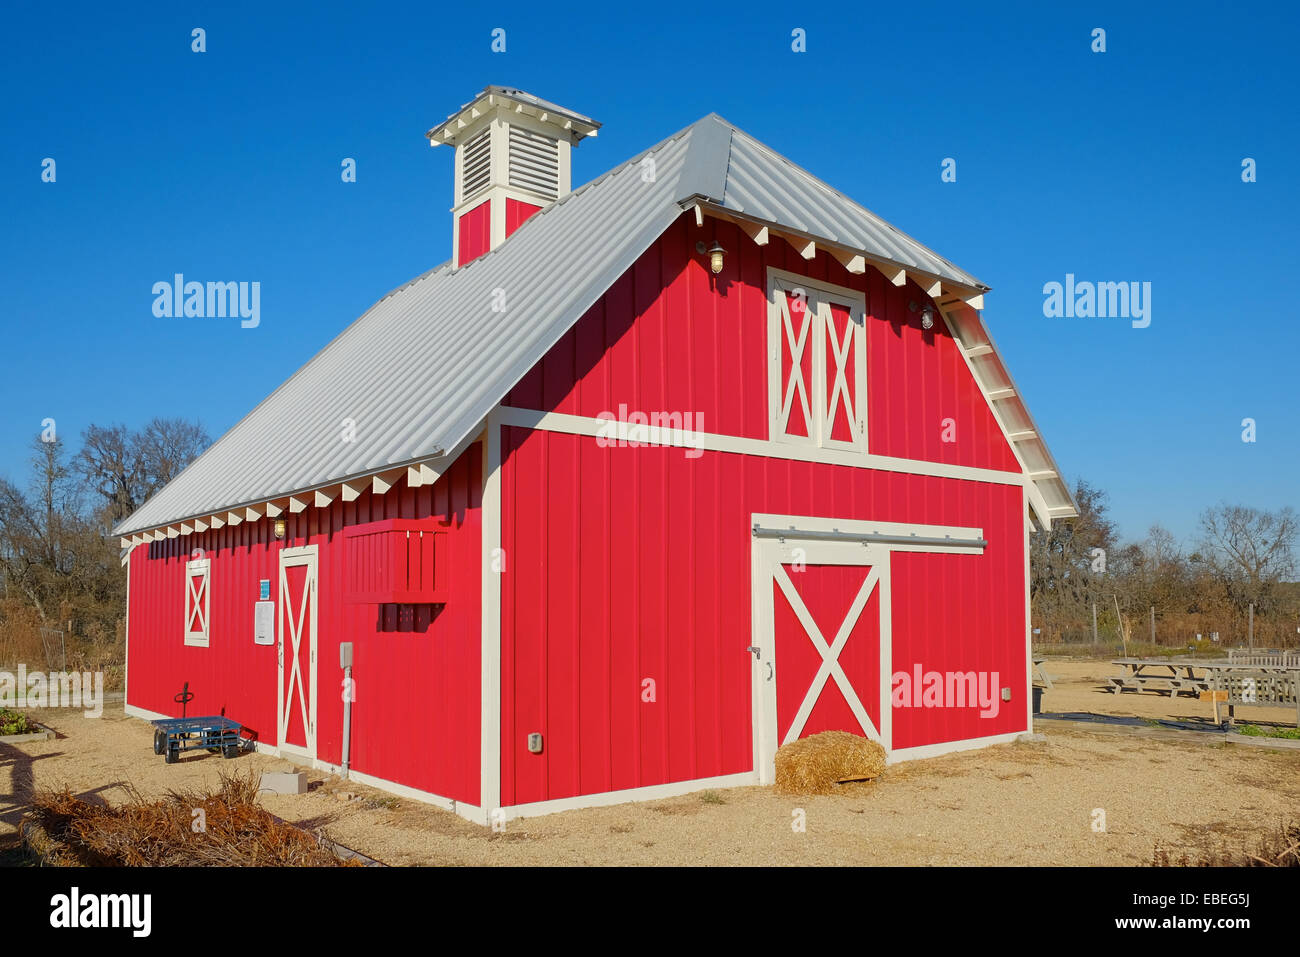 Kleine rote Scheune auf einem ländlichen Farm oder Ranch hauptsächlich für die Lagerung in den Vereinigten Staaten gefunden. Stockfoto